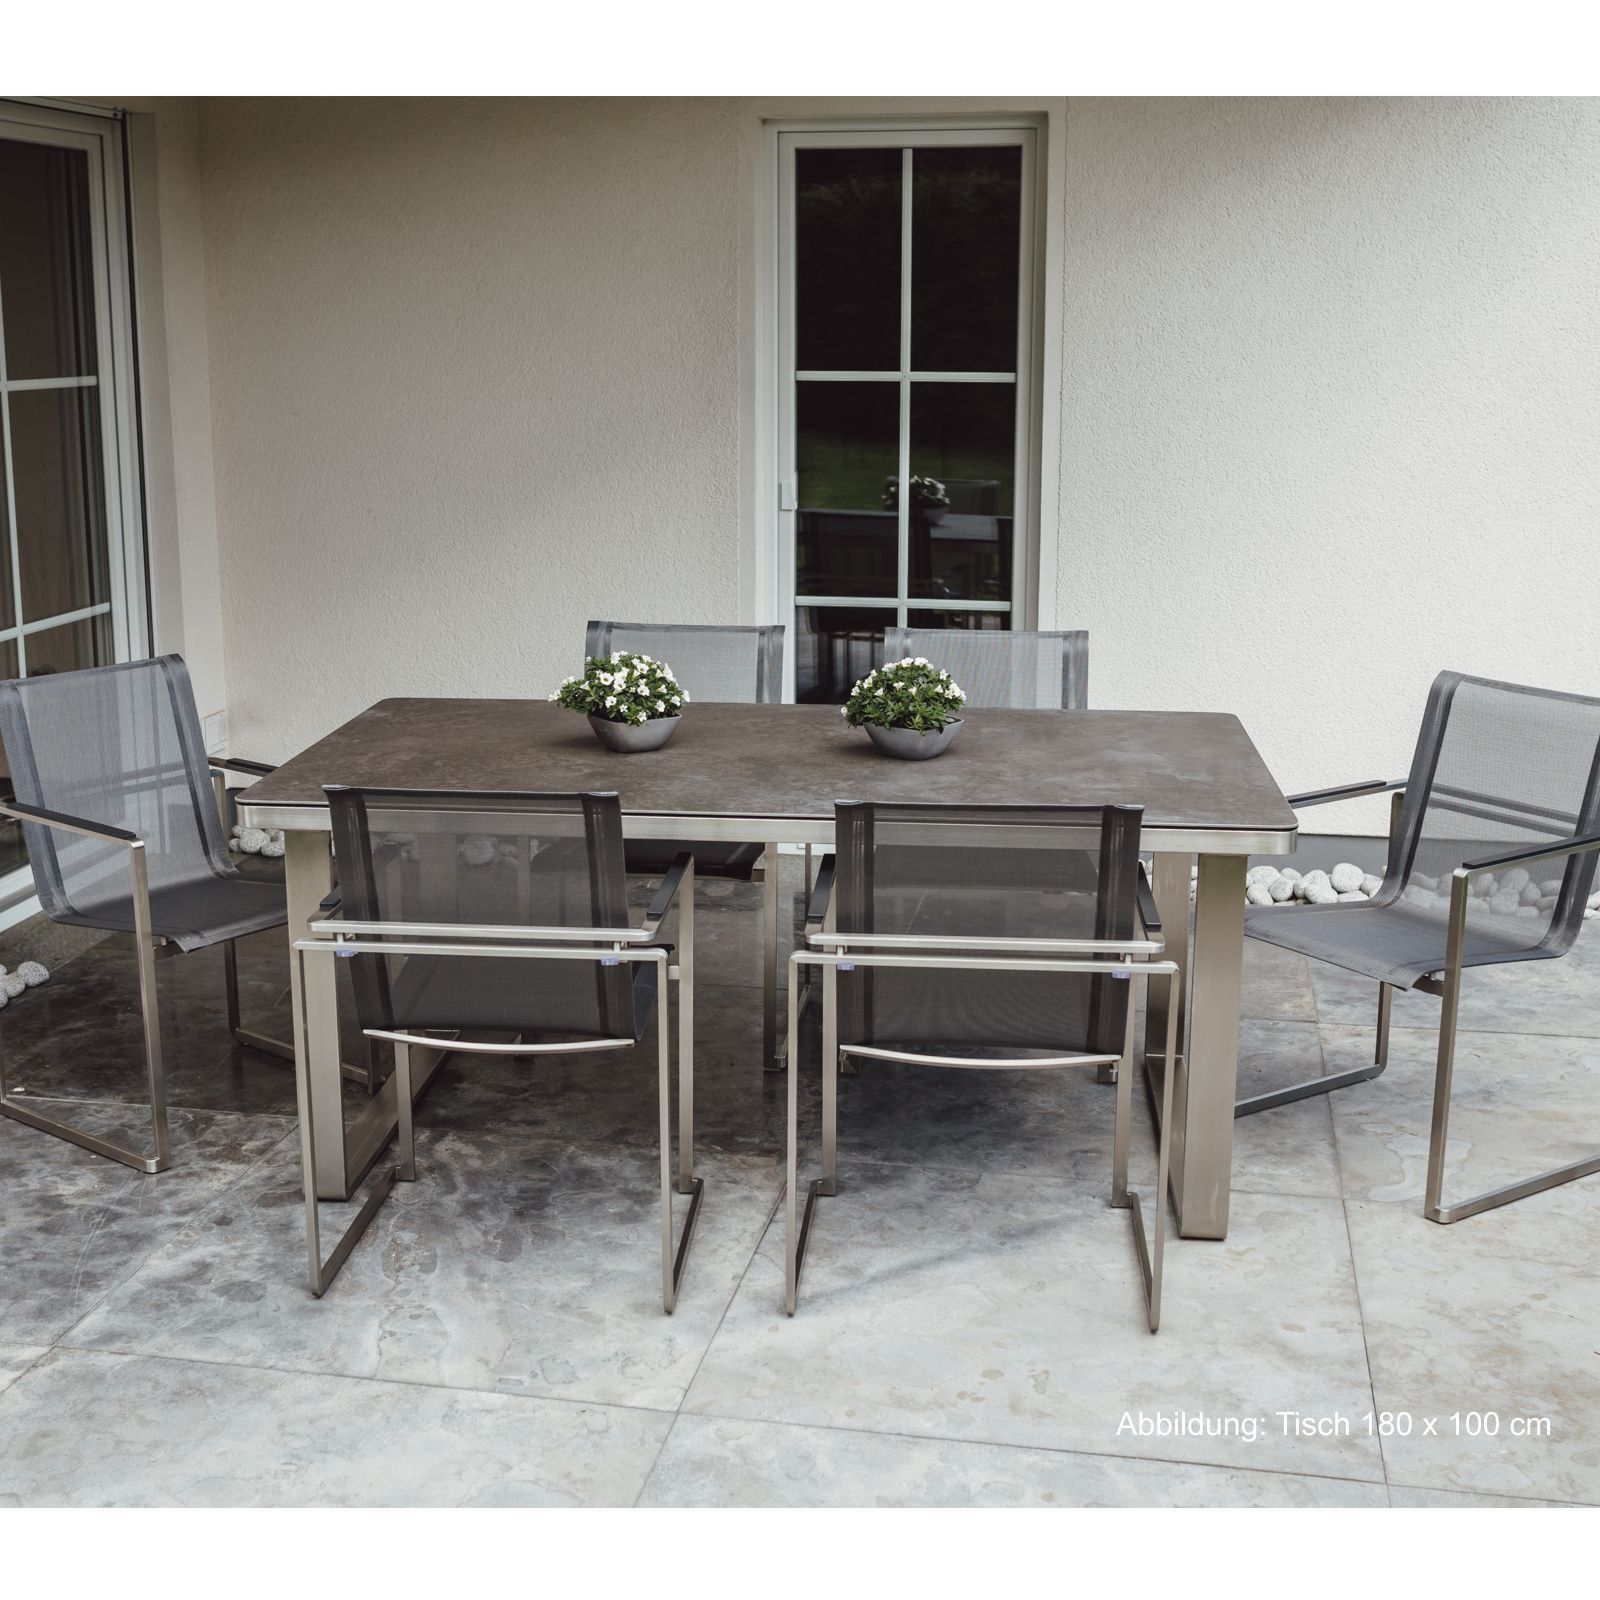 Set di mobili da giardino: 6 sedie e 1 tavolo in acciaio inox e piano in vetroceramica